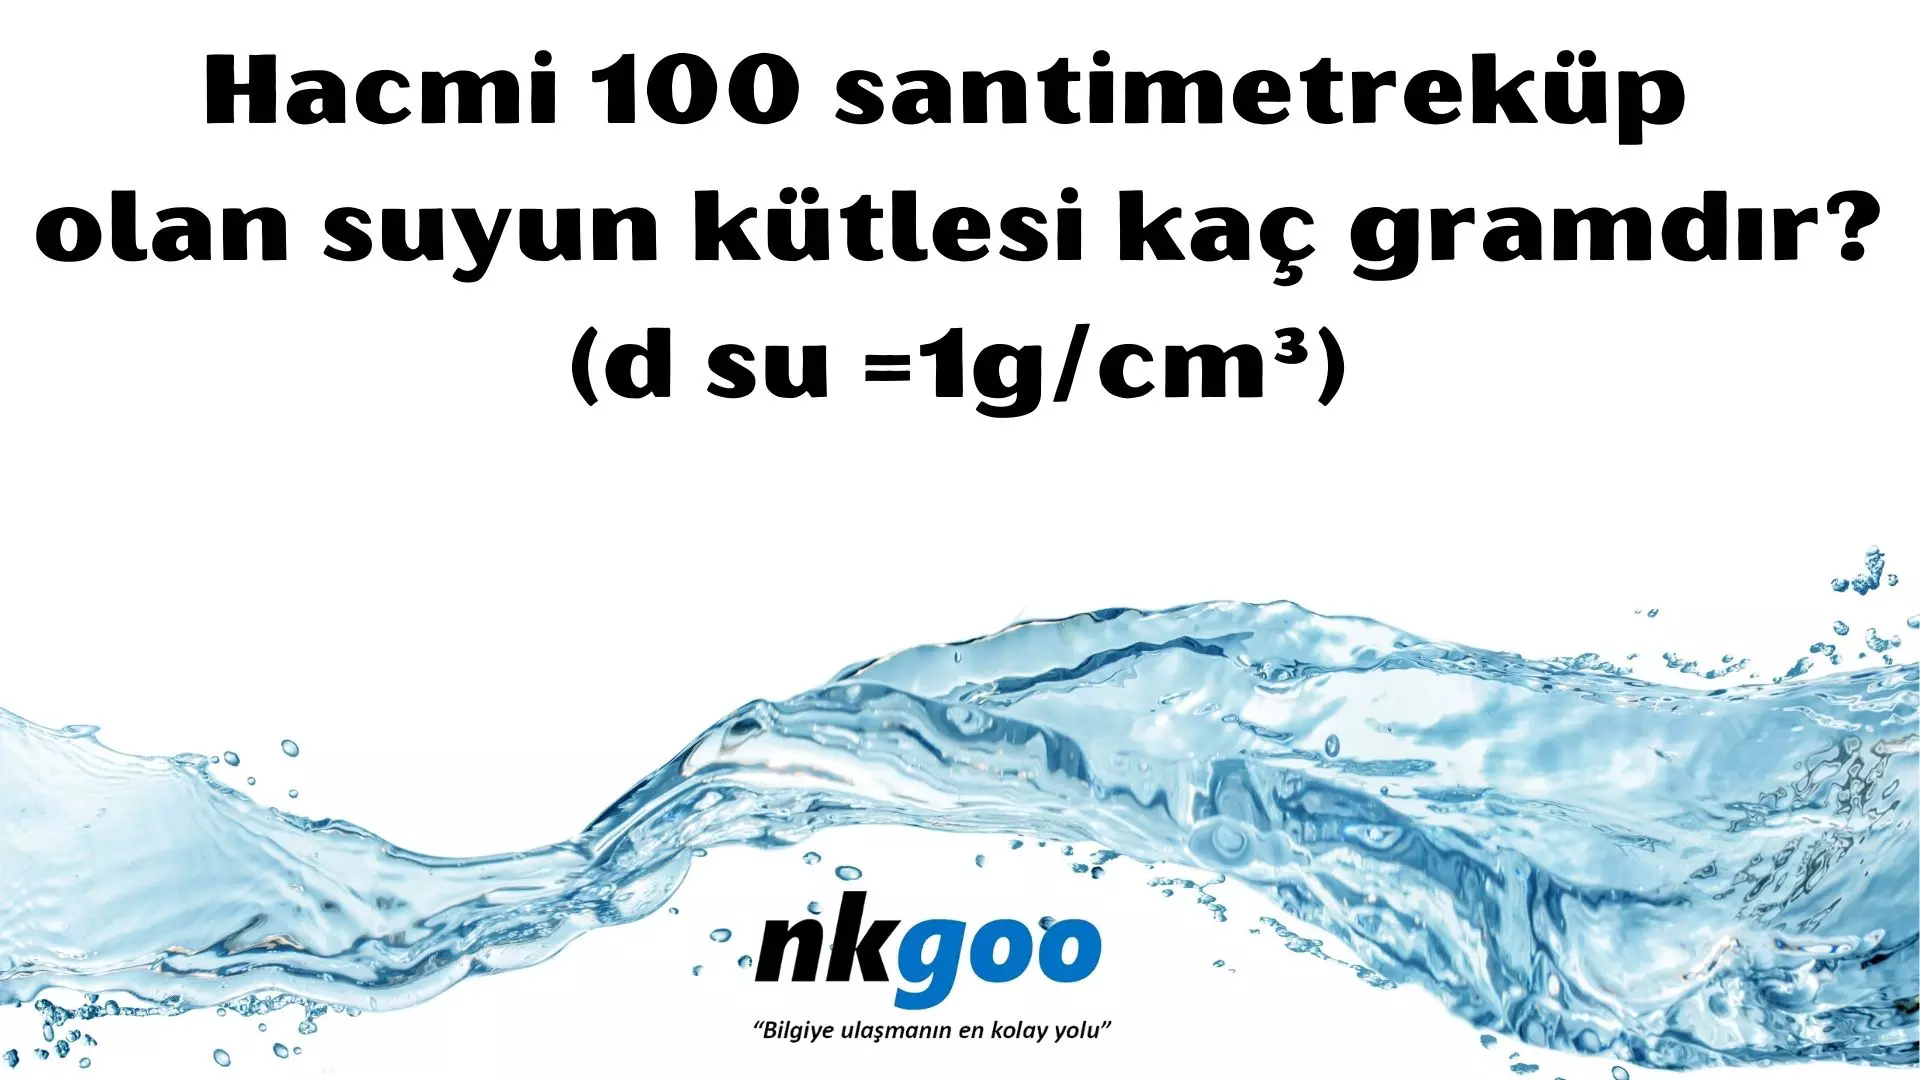 Hacmi 100 santimetreküp olan suyun kütlesi kaç gramdır? (d su =1g/cm³)